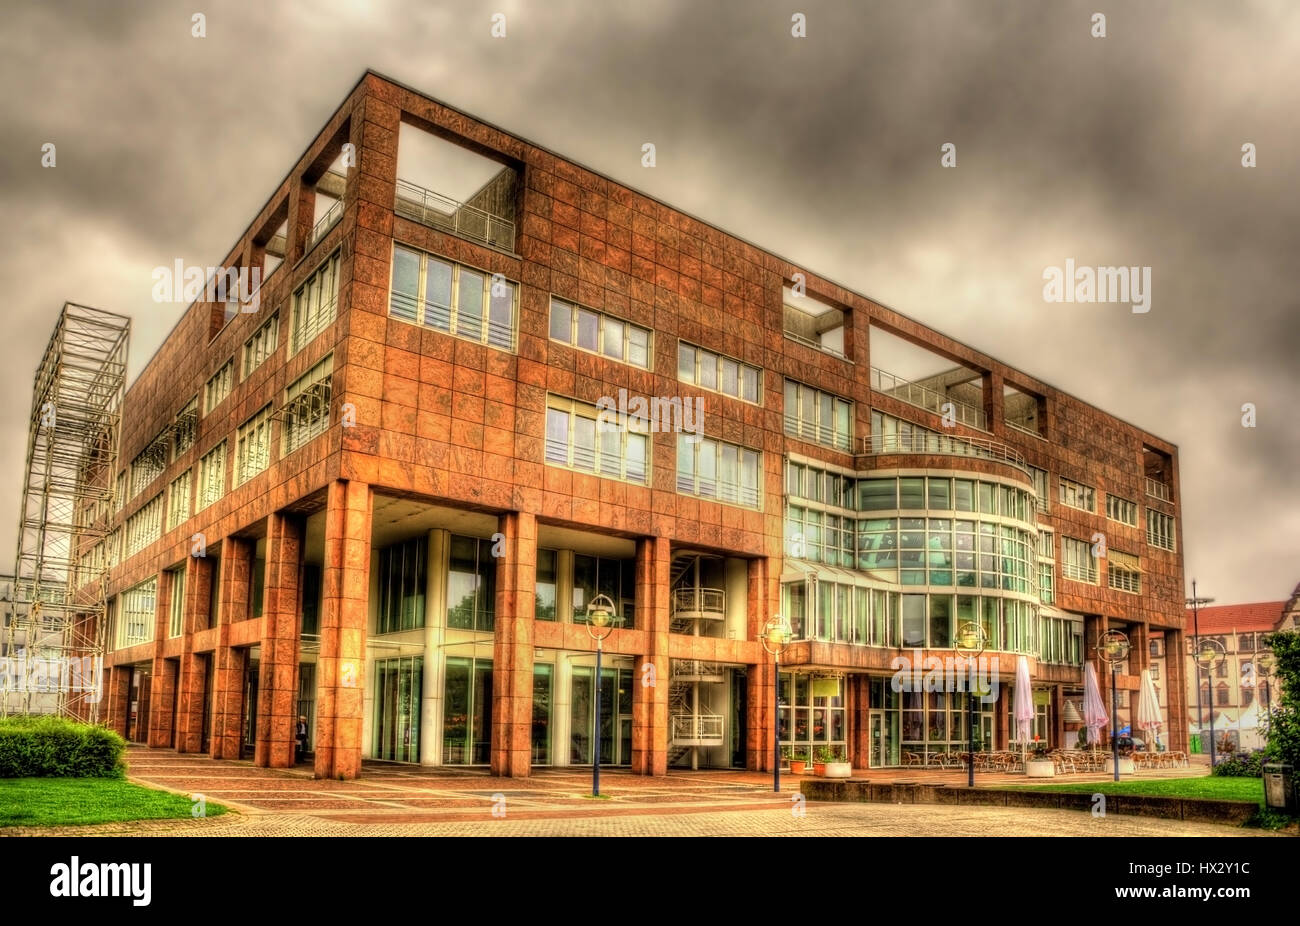 Hôtel de ville de Dortmund, Allemagne - Rhénanie du Nord-Westphalie Banque D'Images